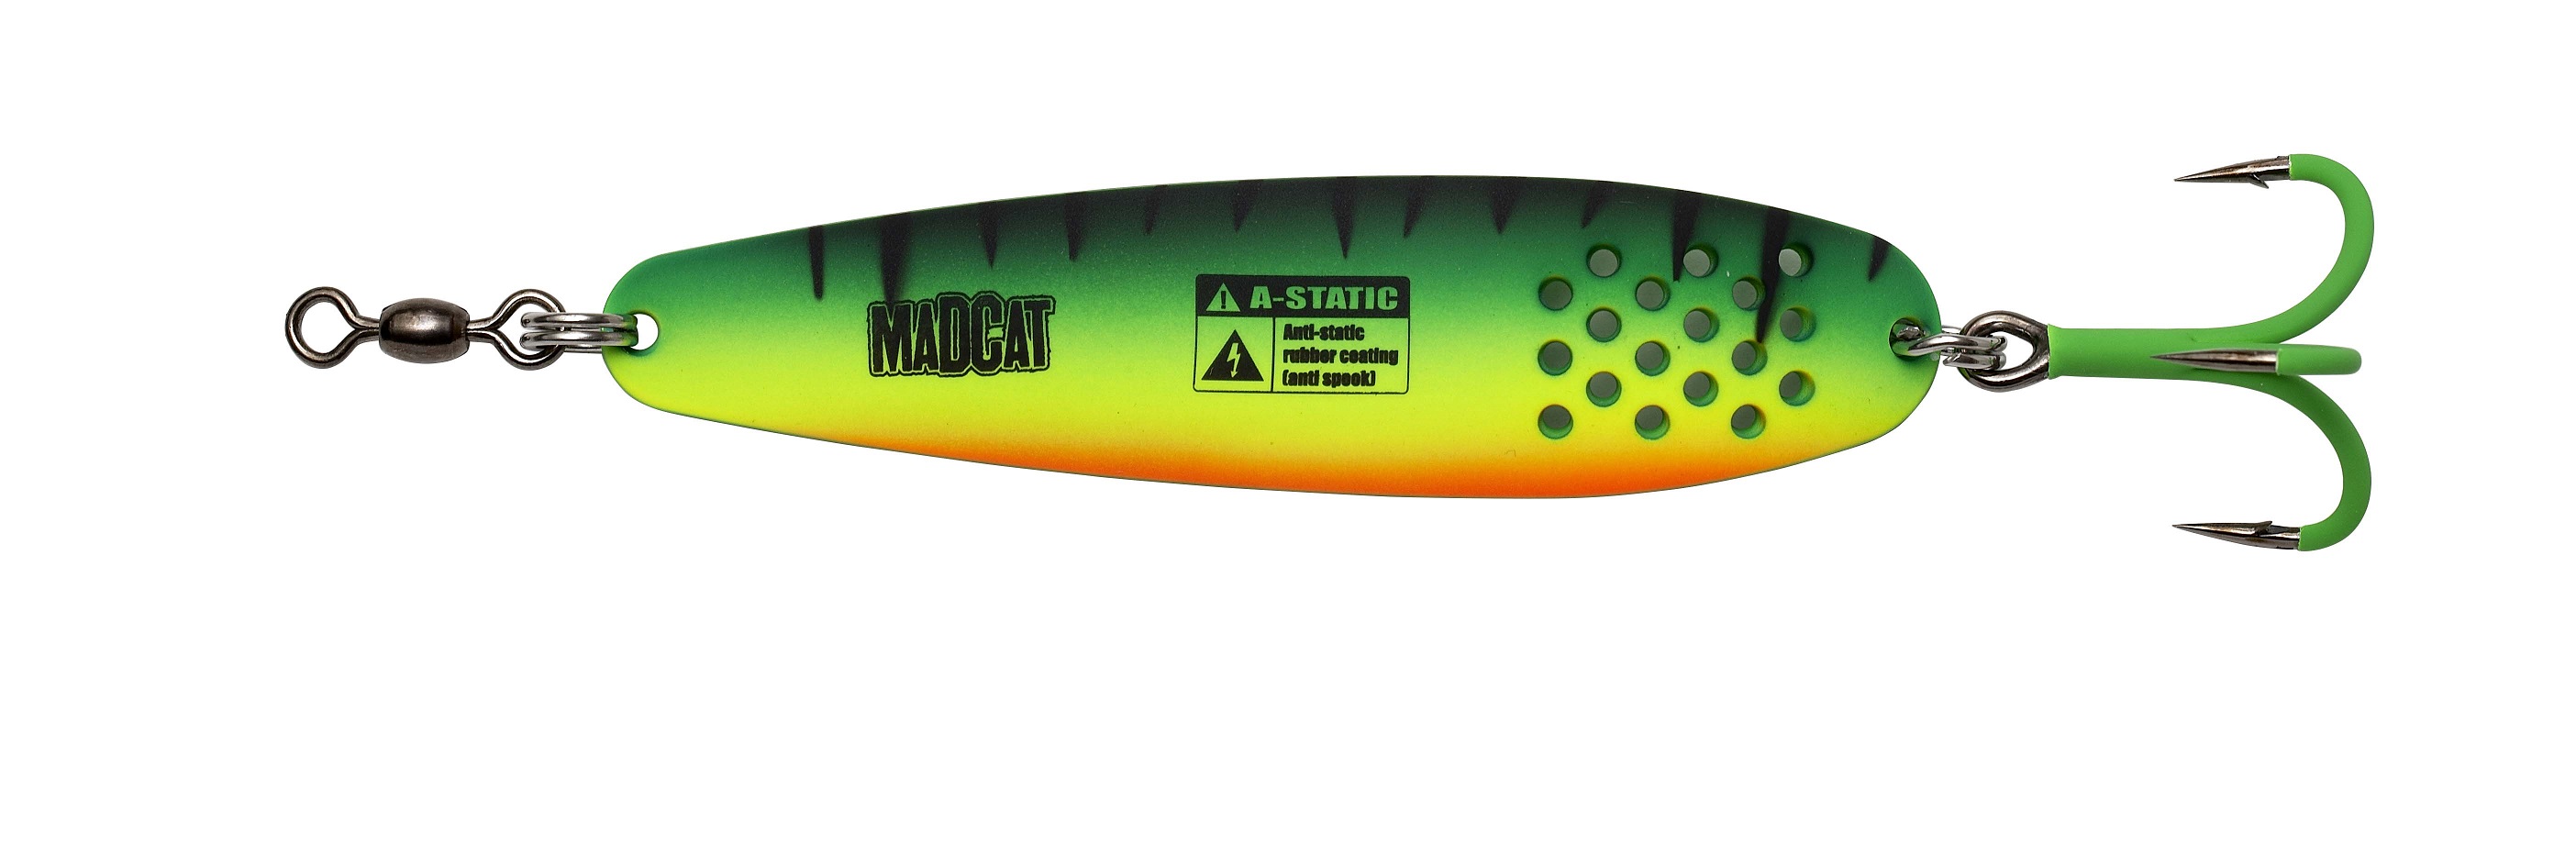 Madcat A-Static Turbine Spoon (90g) - Firetiger UV